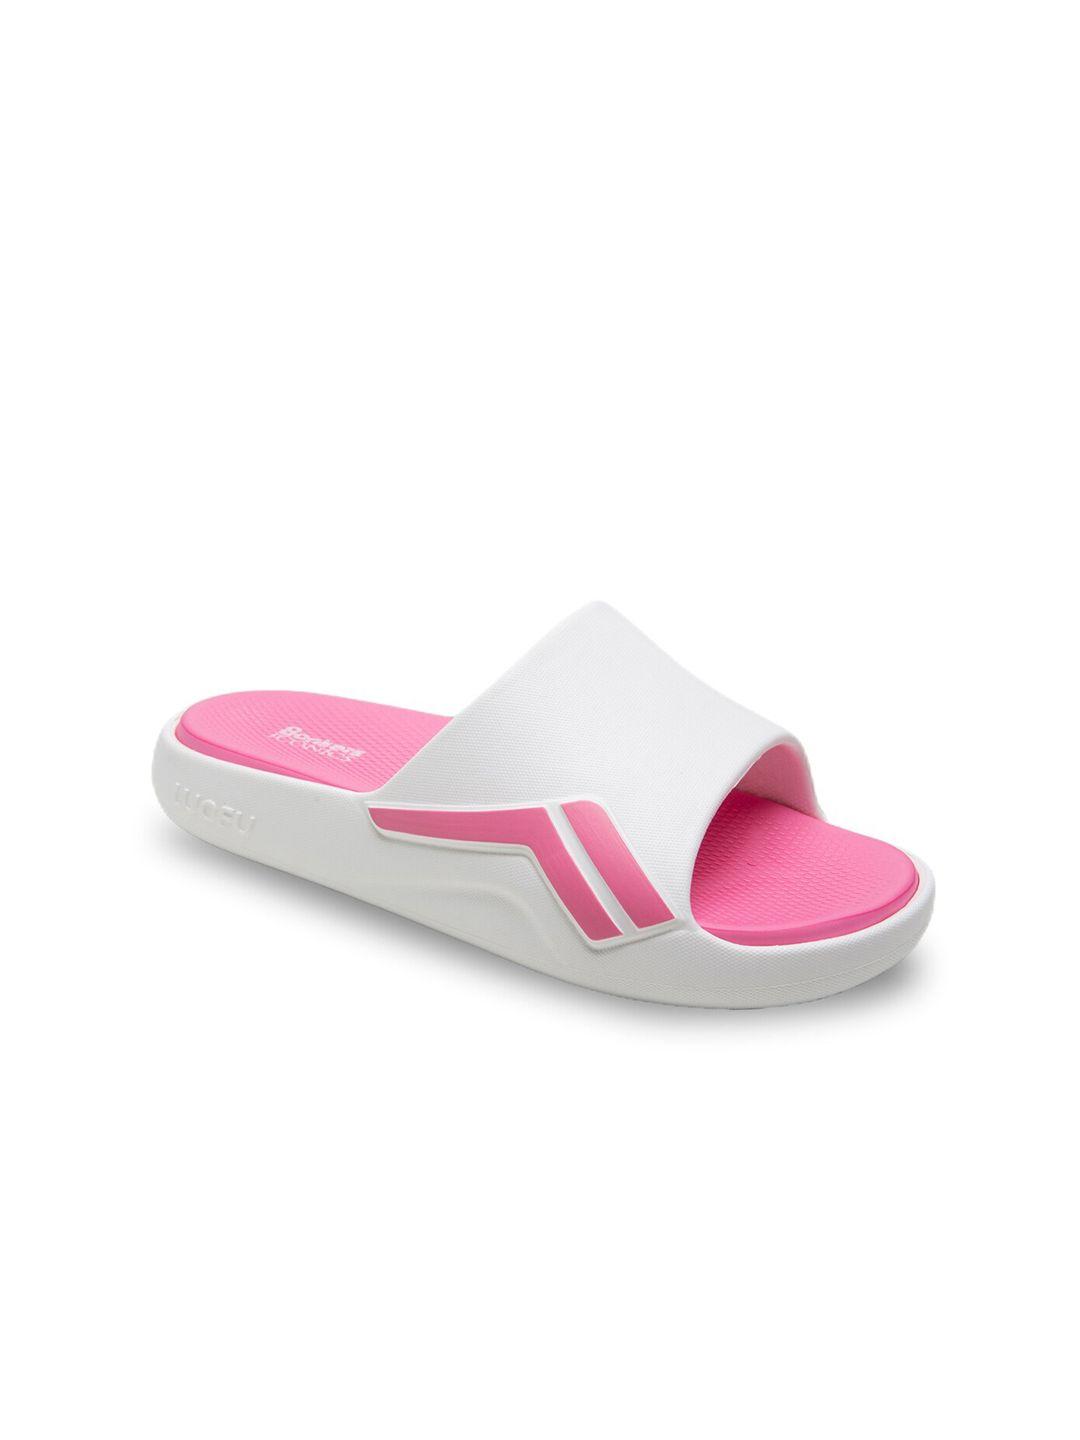 bonkerz-women-pink-&-white-croslite-sliders